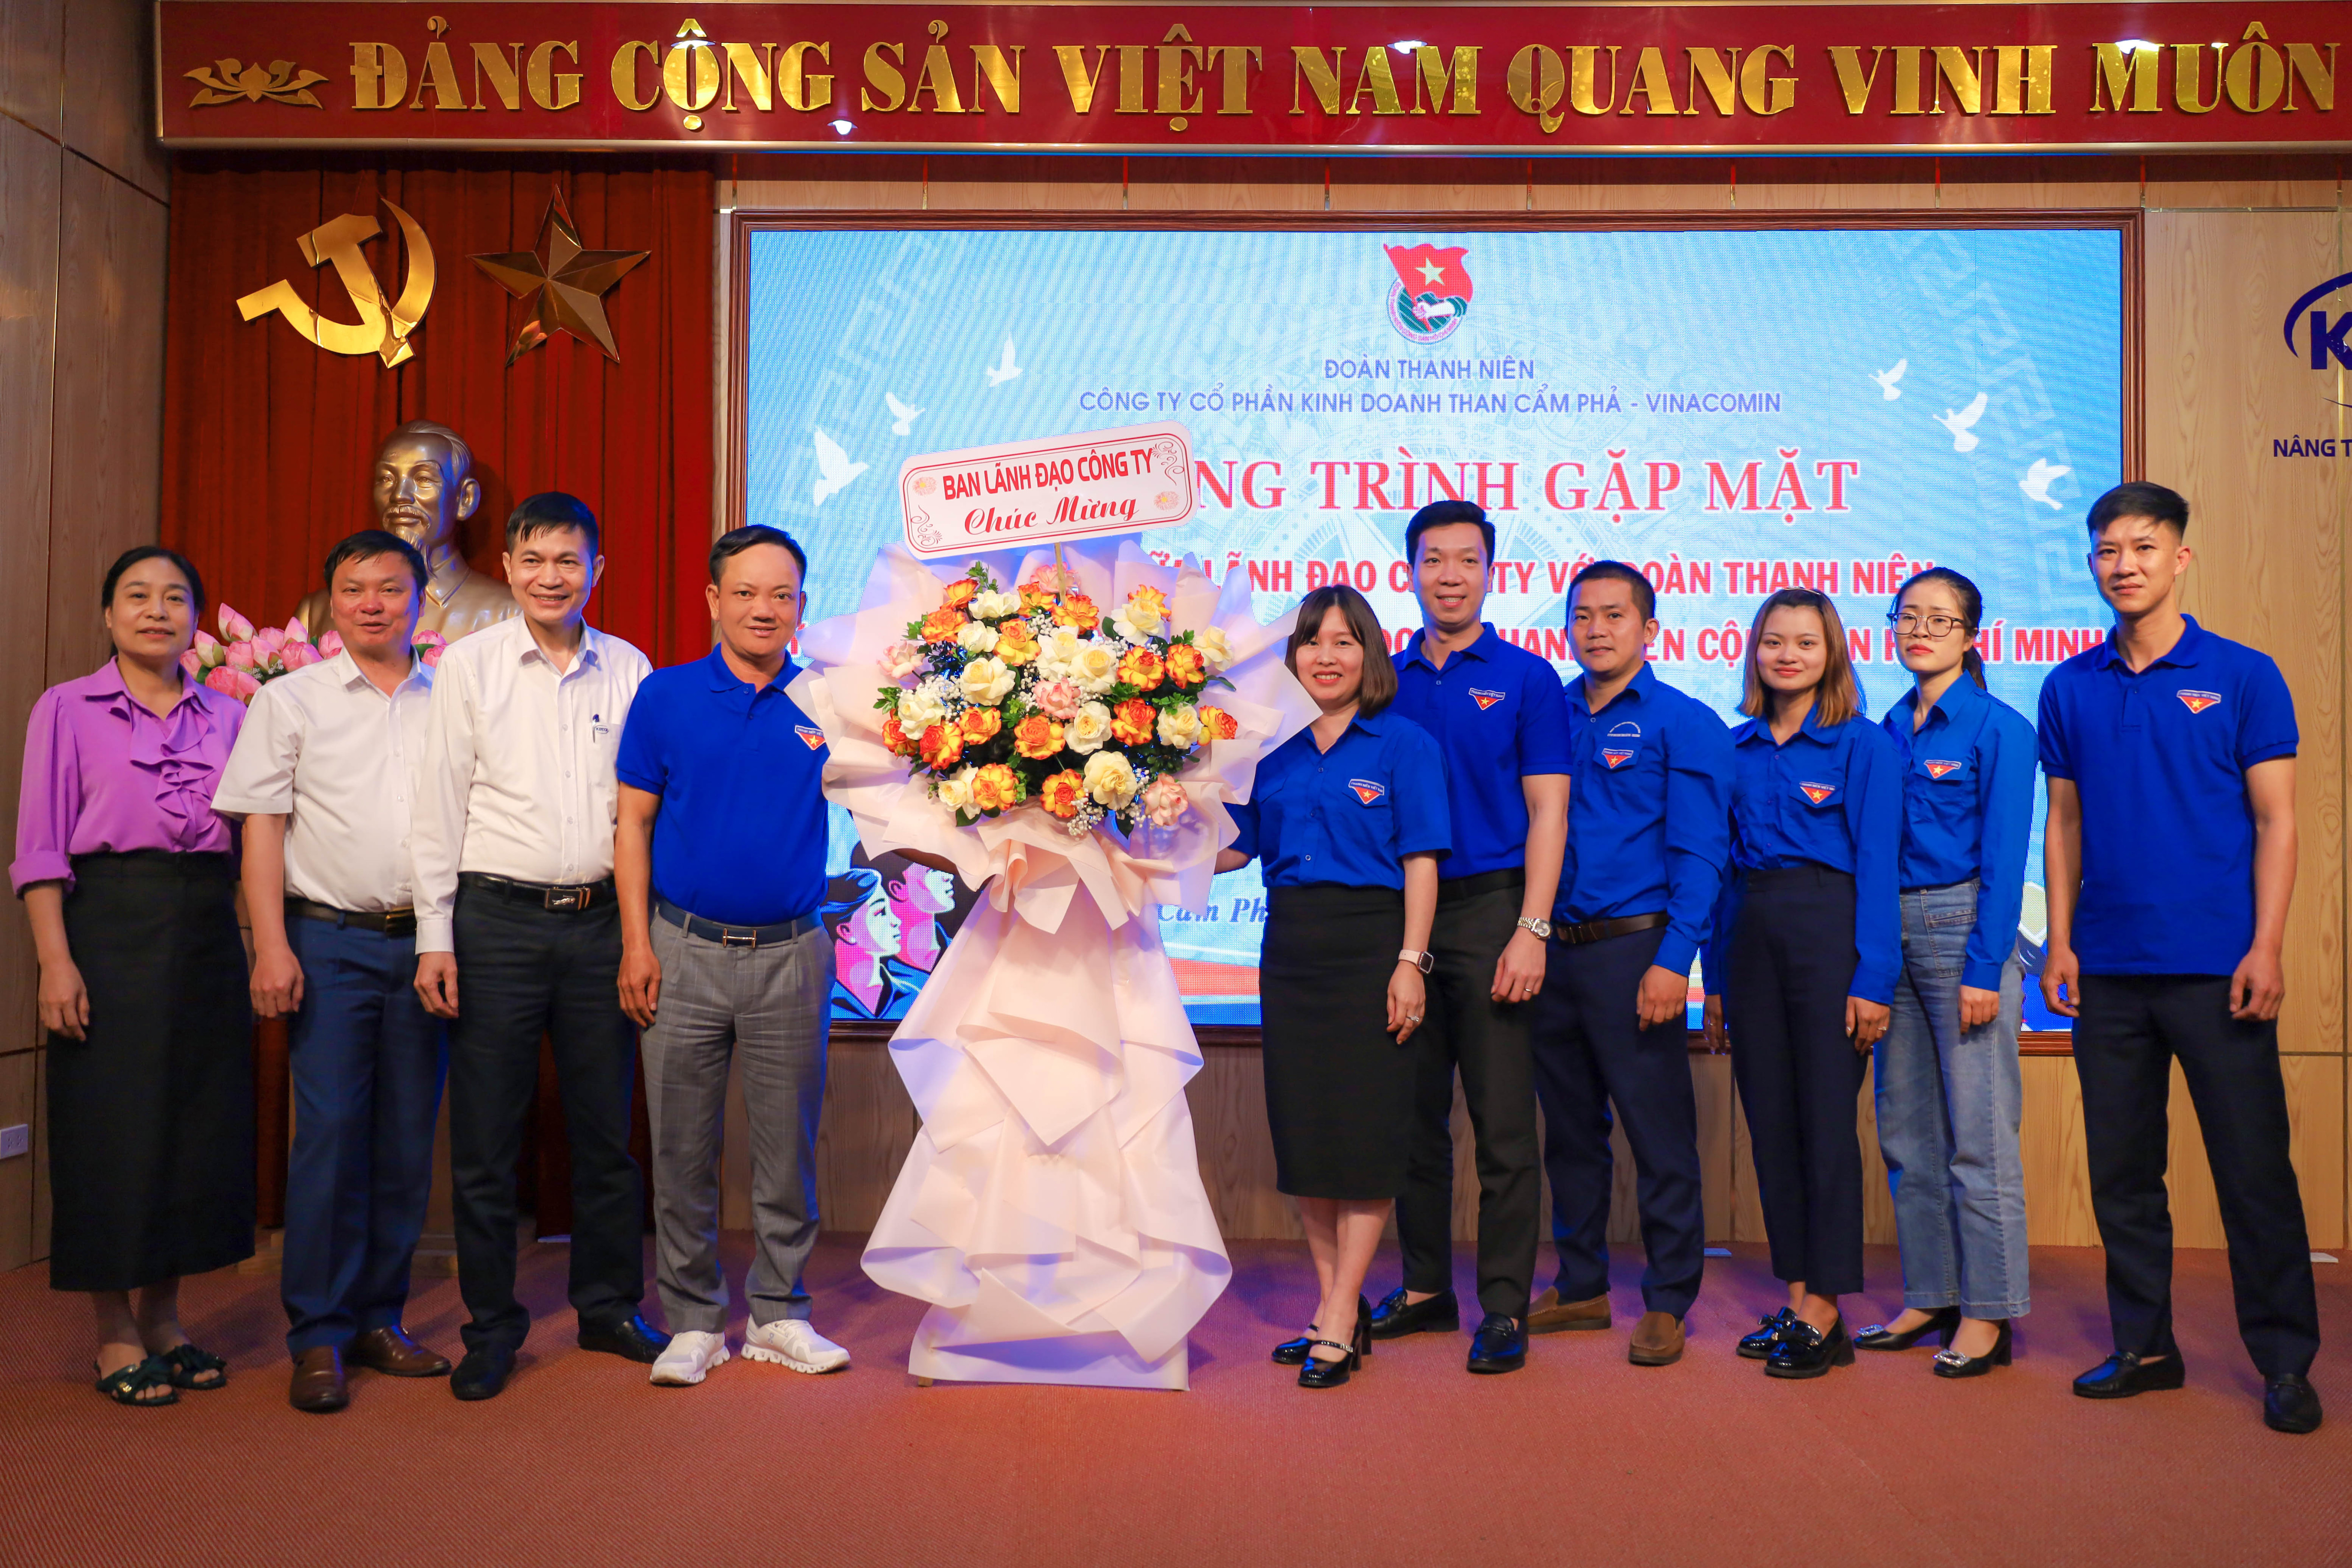 Công ty Cổ phần Kinh doanh than Cẩm Phả - Vinacomin tổ chức gặp mặt đối thoại giữa Lãnh đạo Công ty với Đoàn viên thanh niên